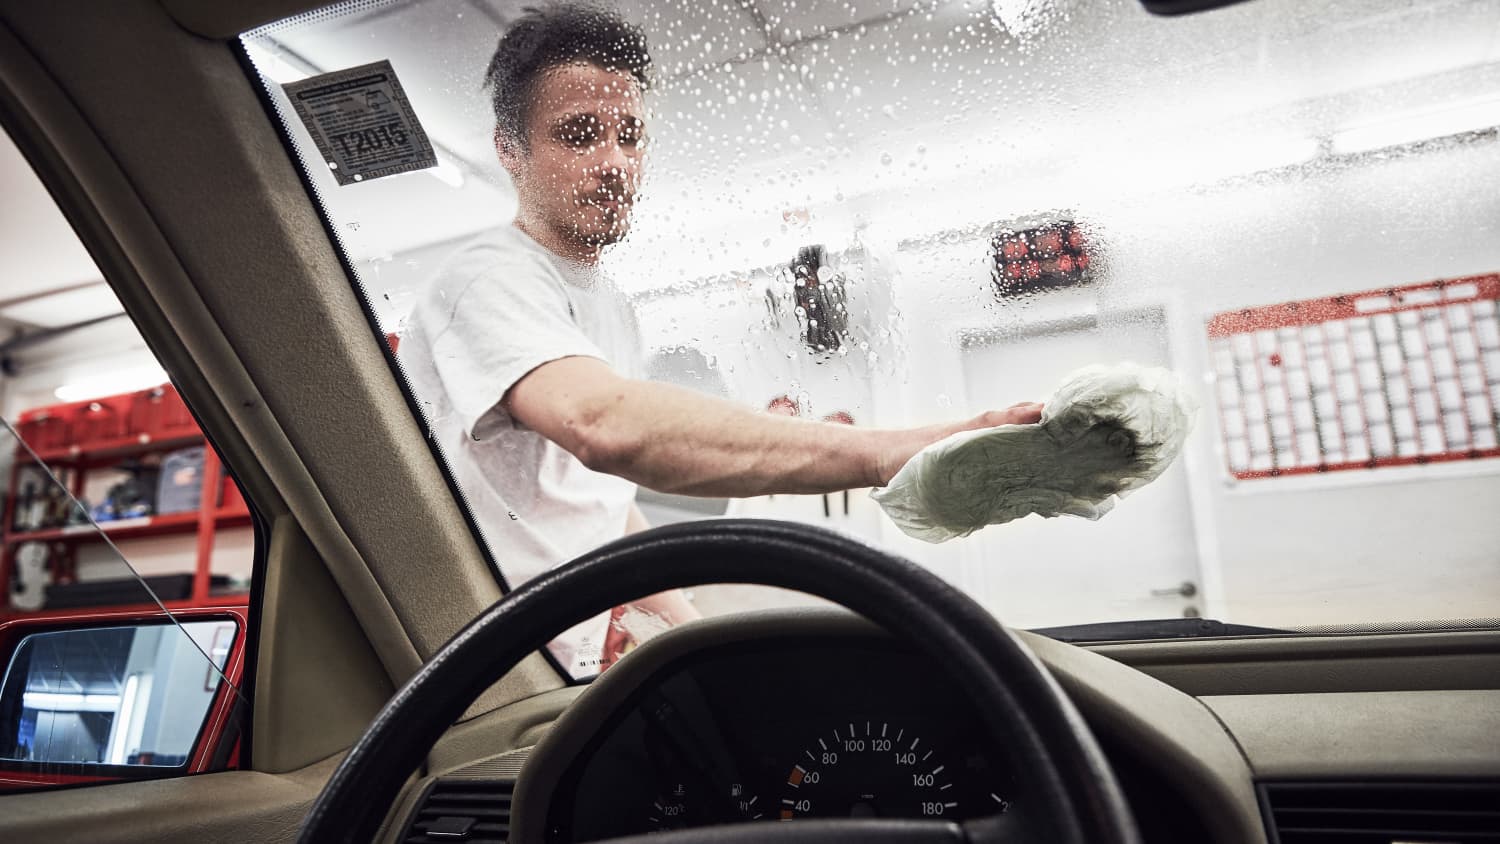 Autoaufbereitung – Tipps für Reinigung und Pflege